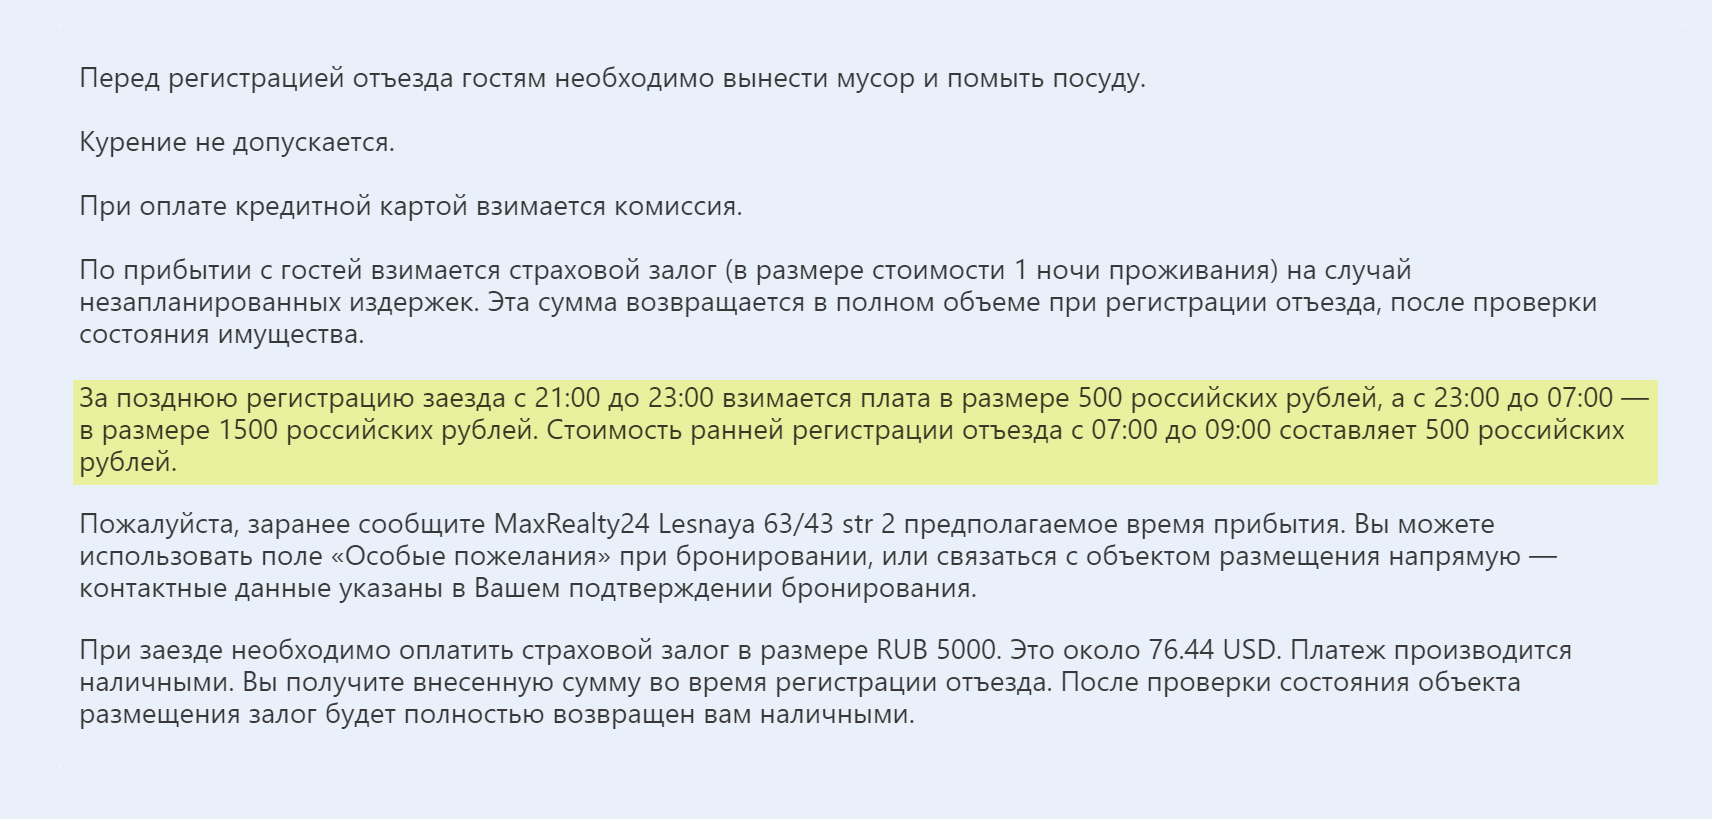 Отель берет деньги за позднюю регистрацию и ранний выезд — от 500 до 1500 рублей. А еще просят вынести мусор и помыть посуду перед отъездом — не самая удобная опция